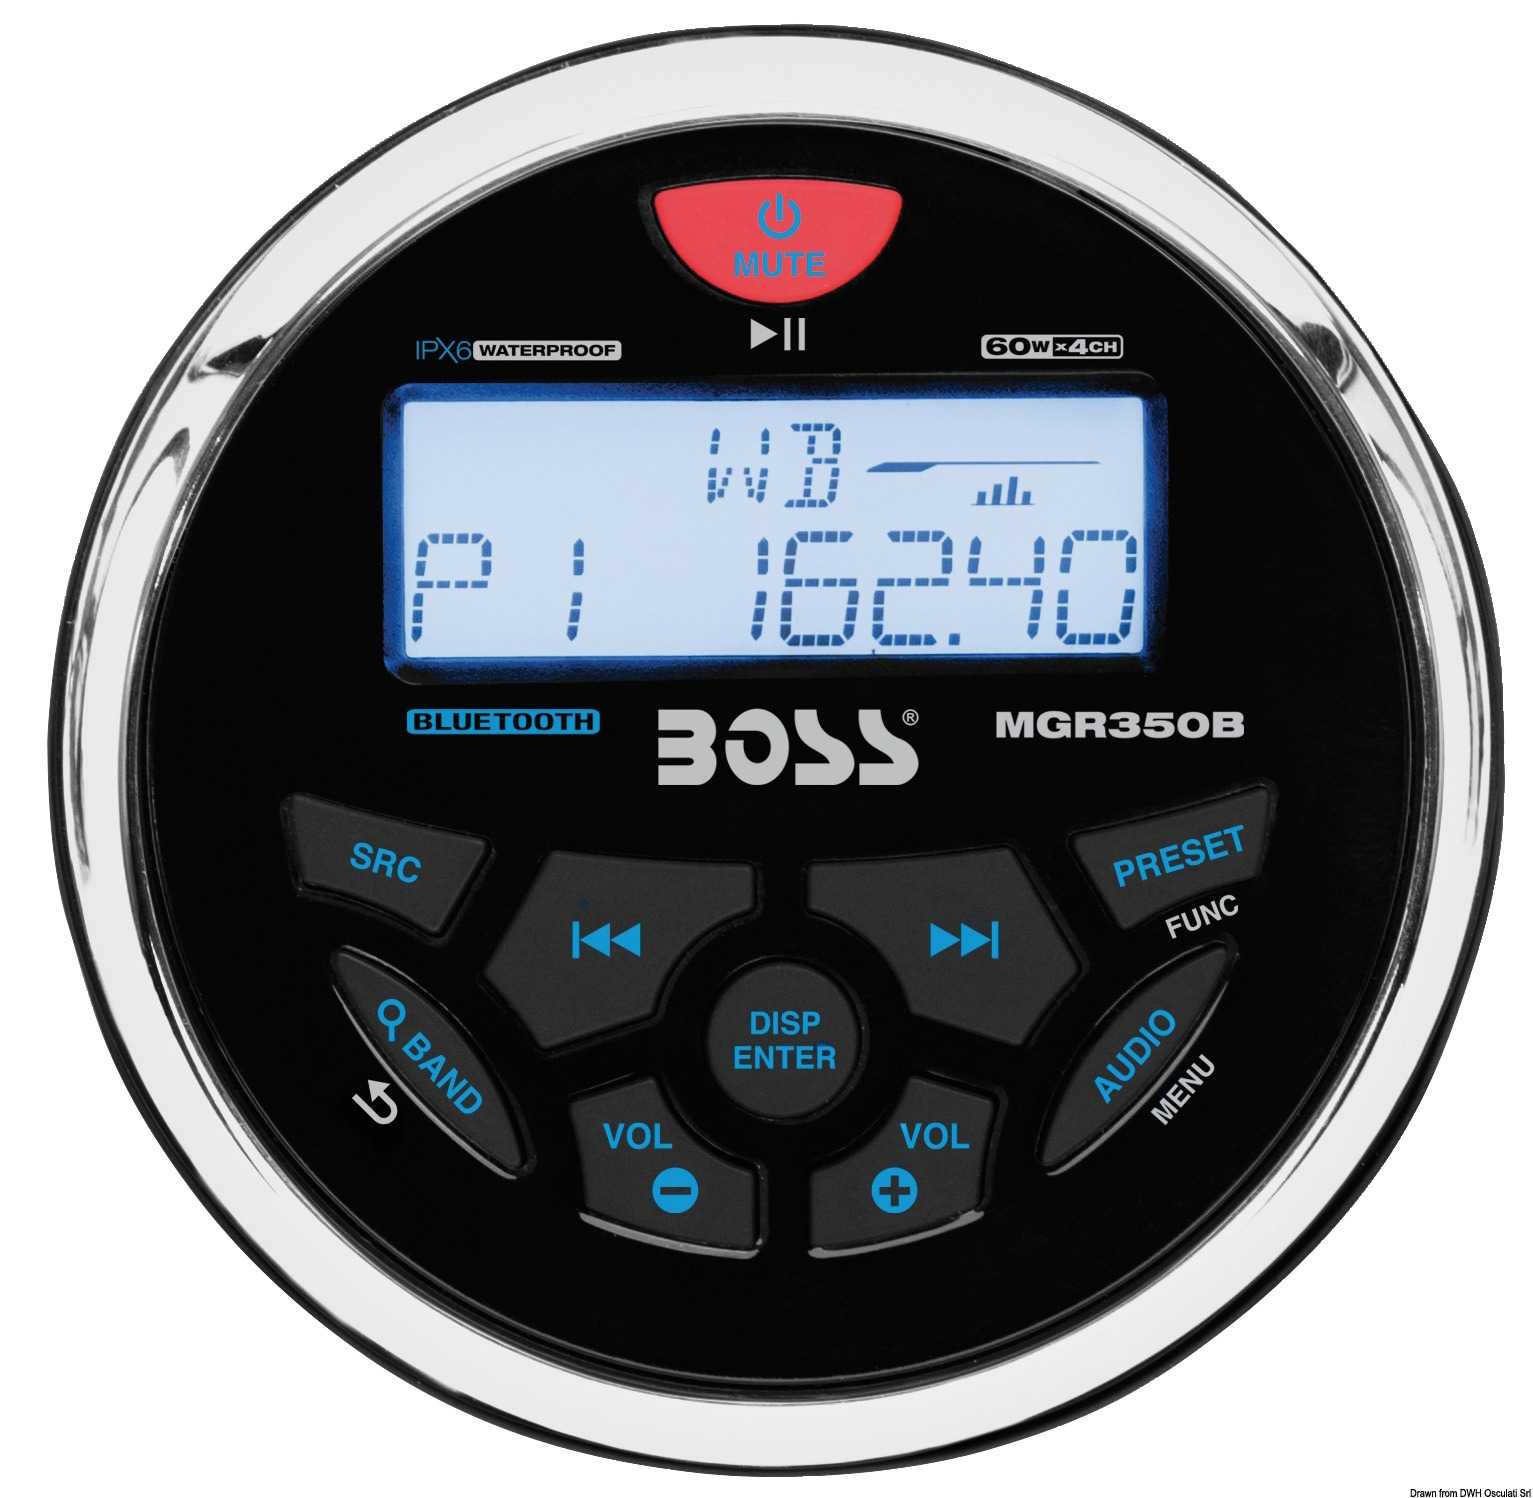 BOSS FM/AM/Bluetooth/USB/MP3 radio for dashboard